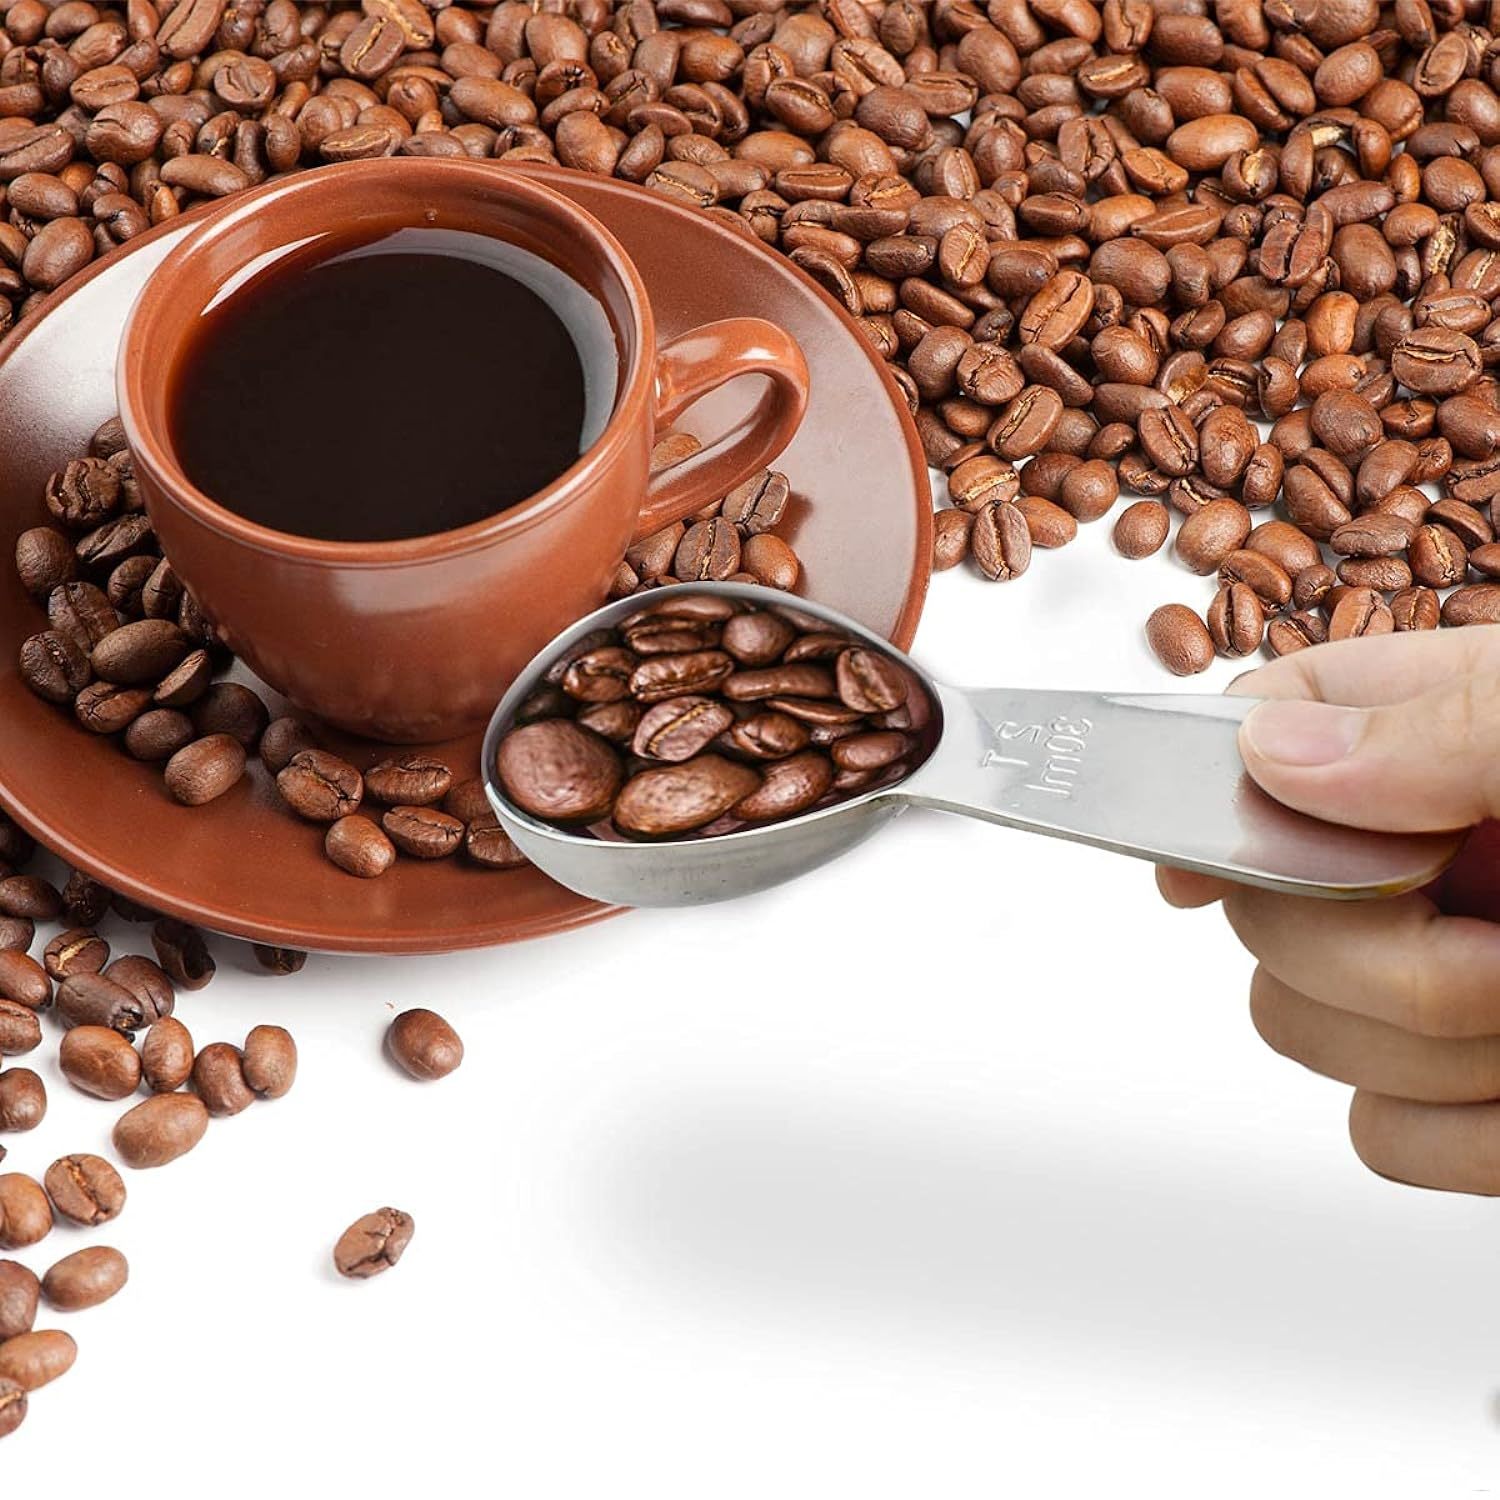 Long Handle Coffee Scoop 1 Tbsp Measuring Scoop Spoon 1 Tablespoon  Stainless Steel Coffee Scoop for Ground Coffee Bean Tea Sugar Flour Liquid